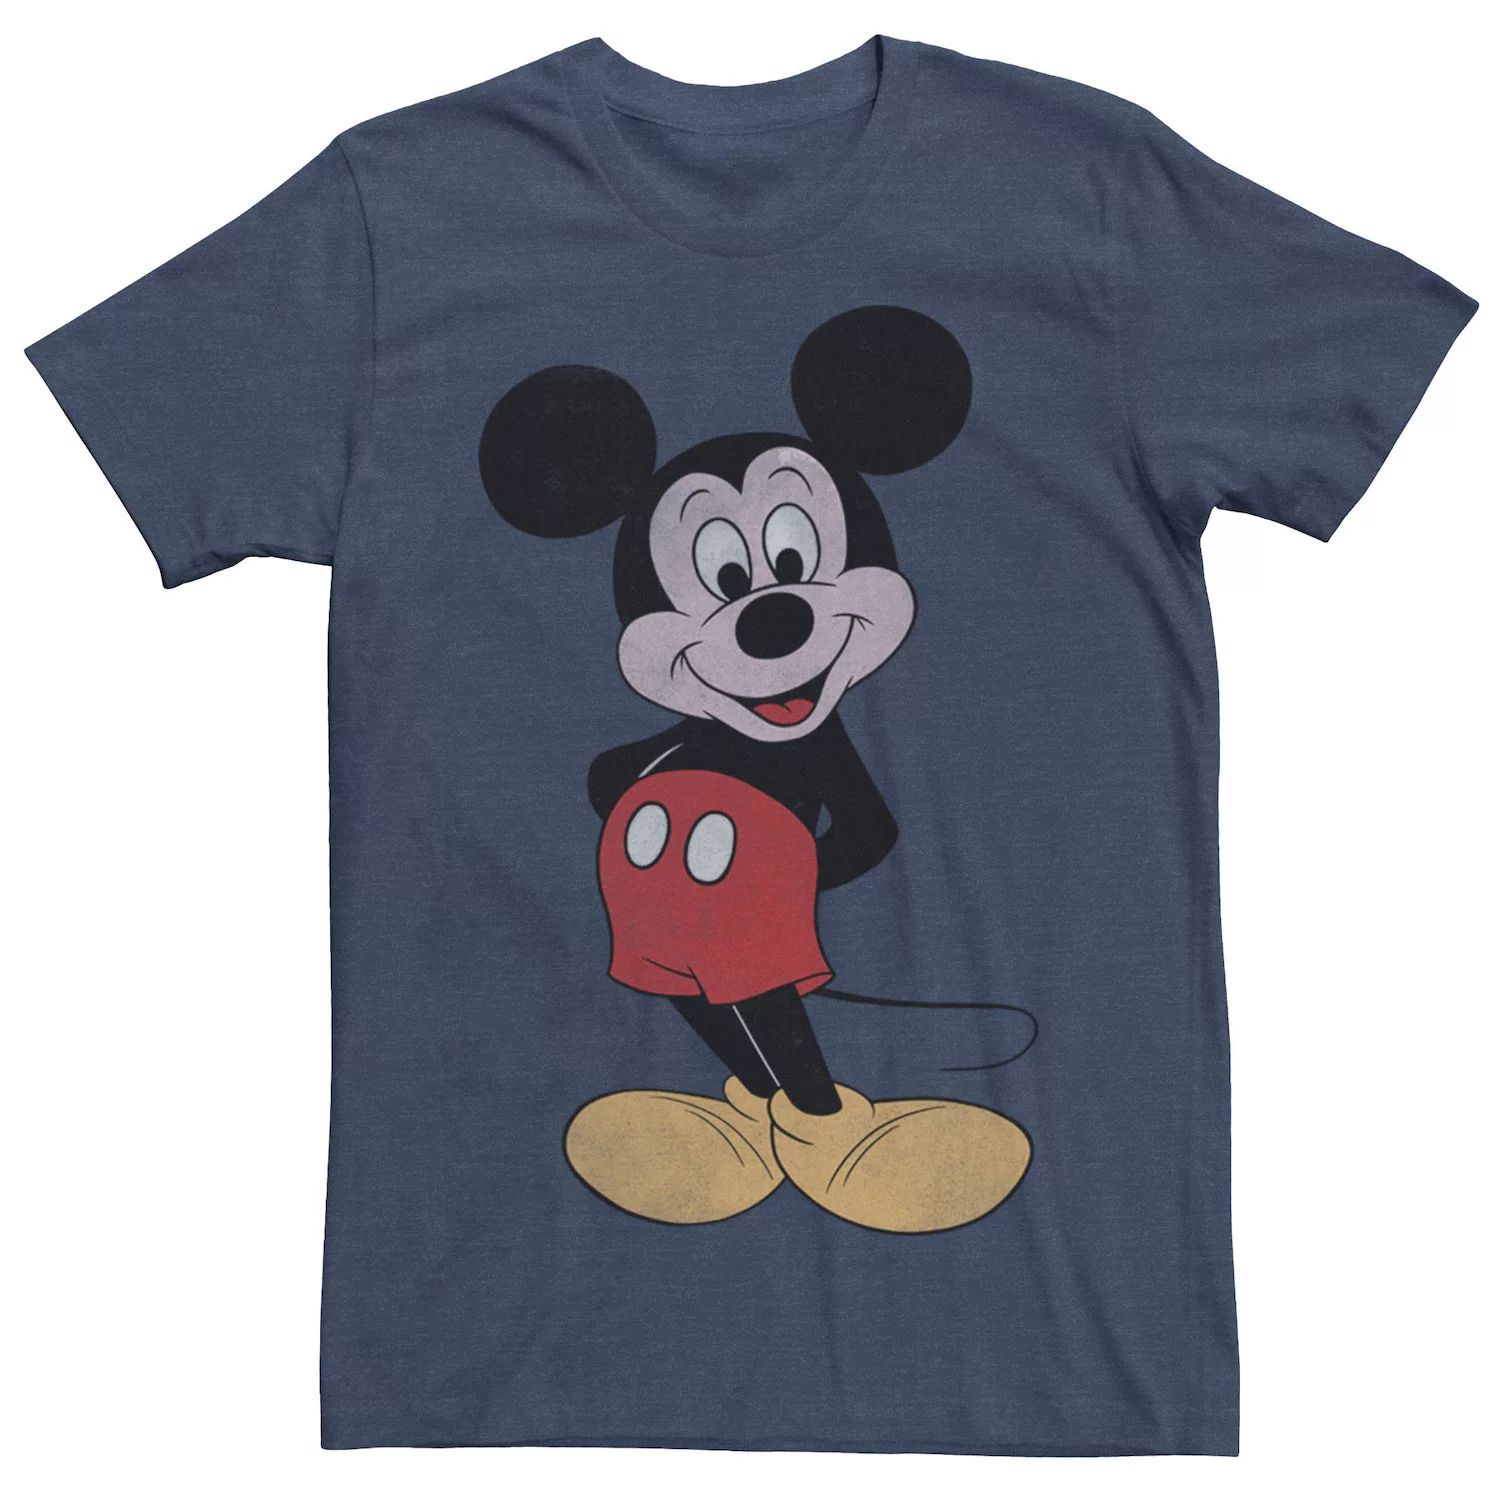 Мужская винтажная футболка с Микки Маусом в позе Микки Мауса Disney винтажная футболка с микки маусом disney серый